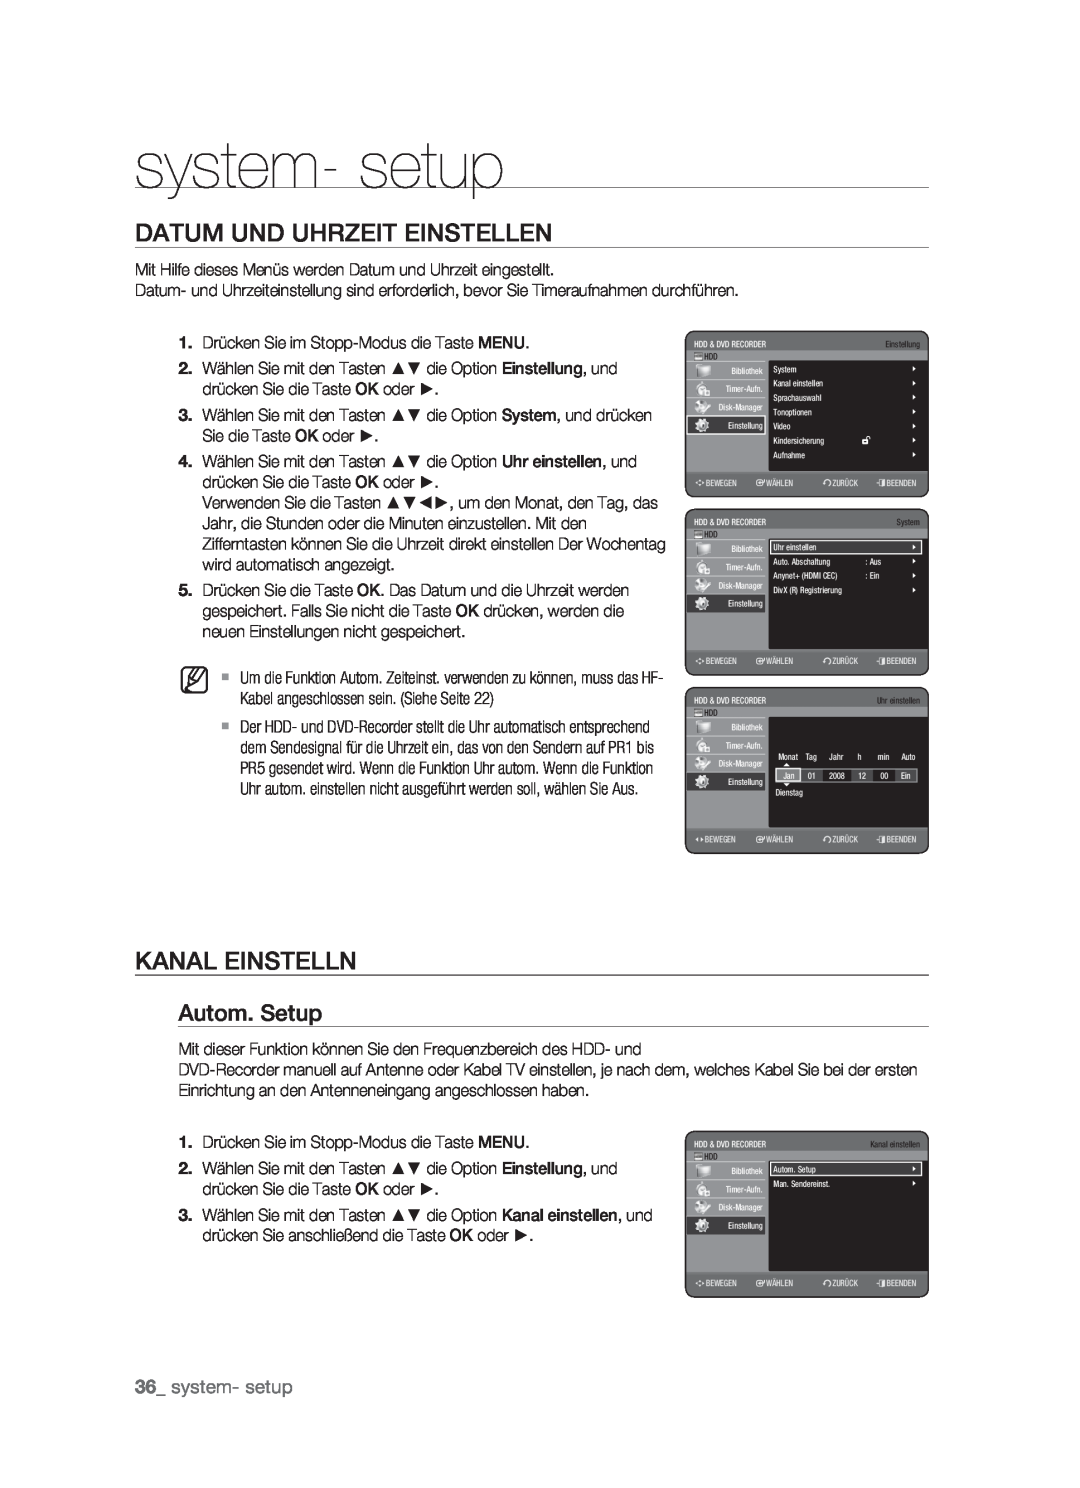 Samsung DVD-HR773/XEN, DVD-HR773/XEB system- setup, Datum Und Uhrzeit Einstellen, Kanal Einstelln, Autom. Setup, M   